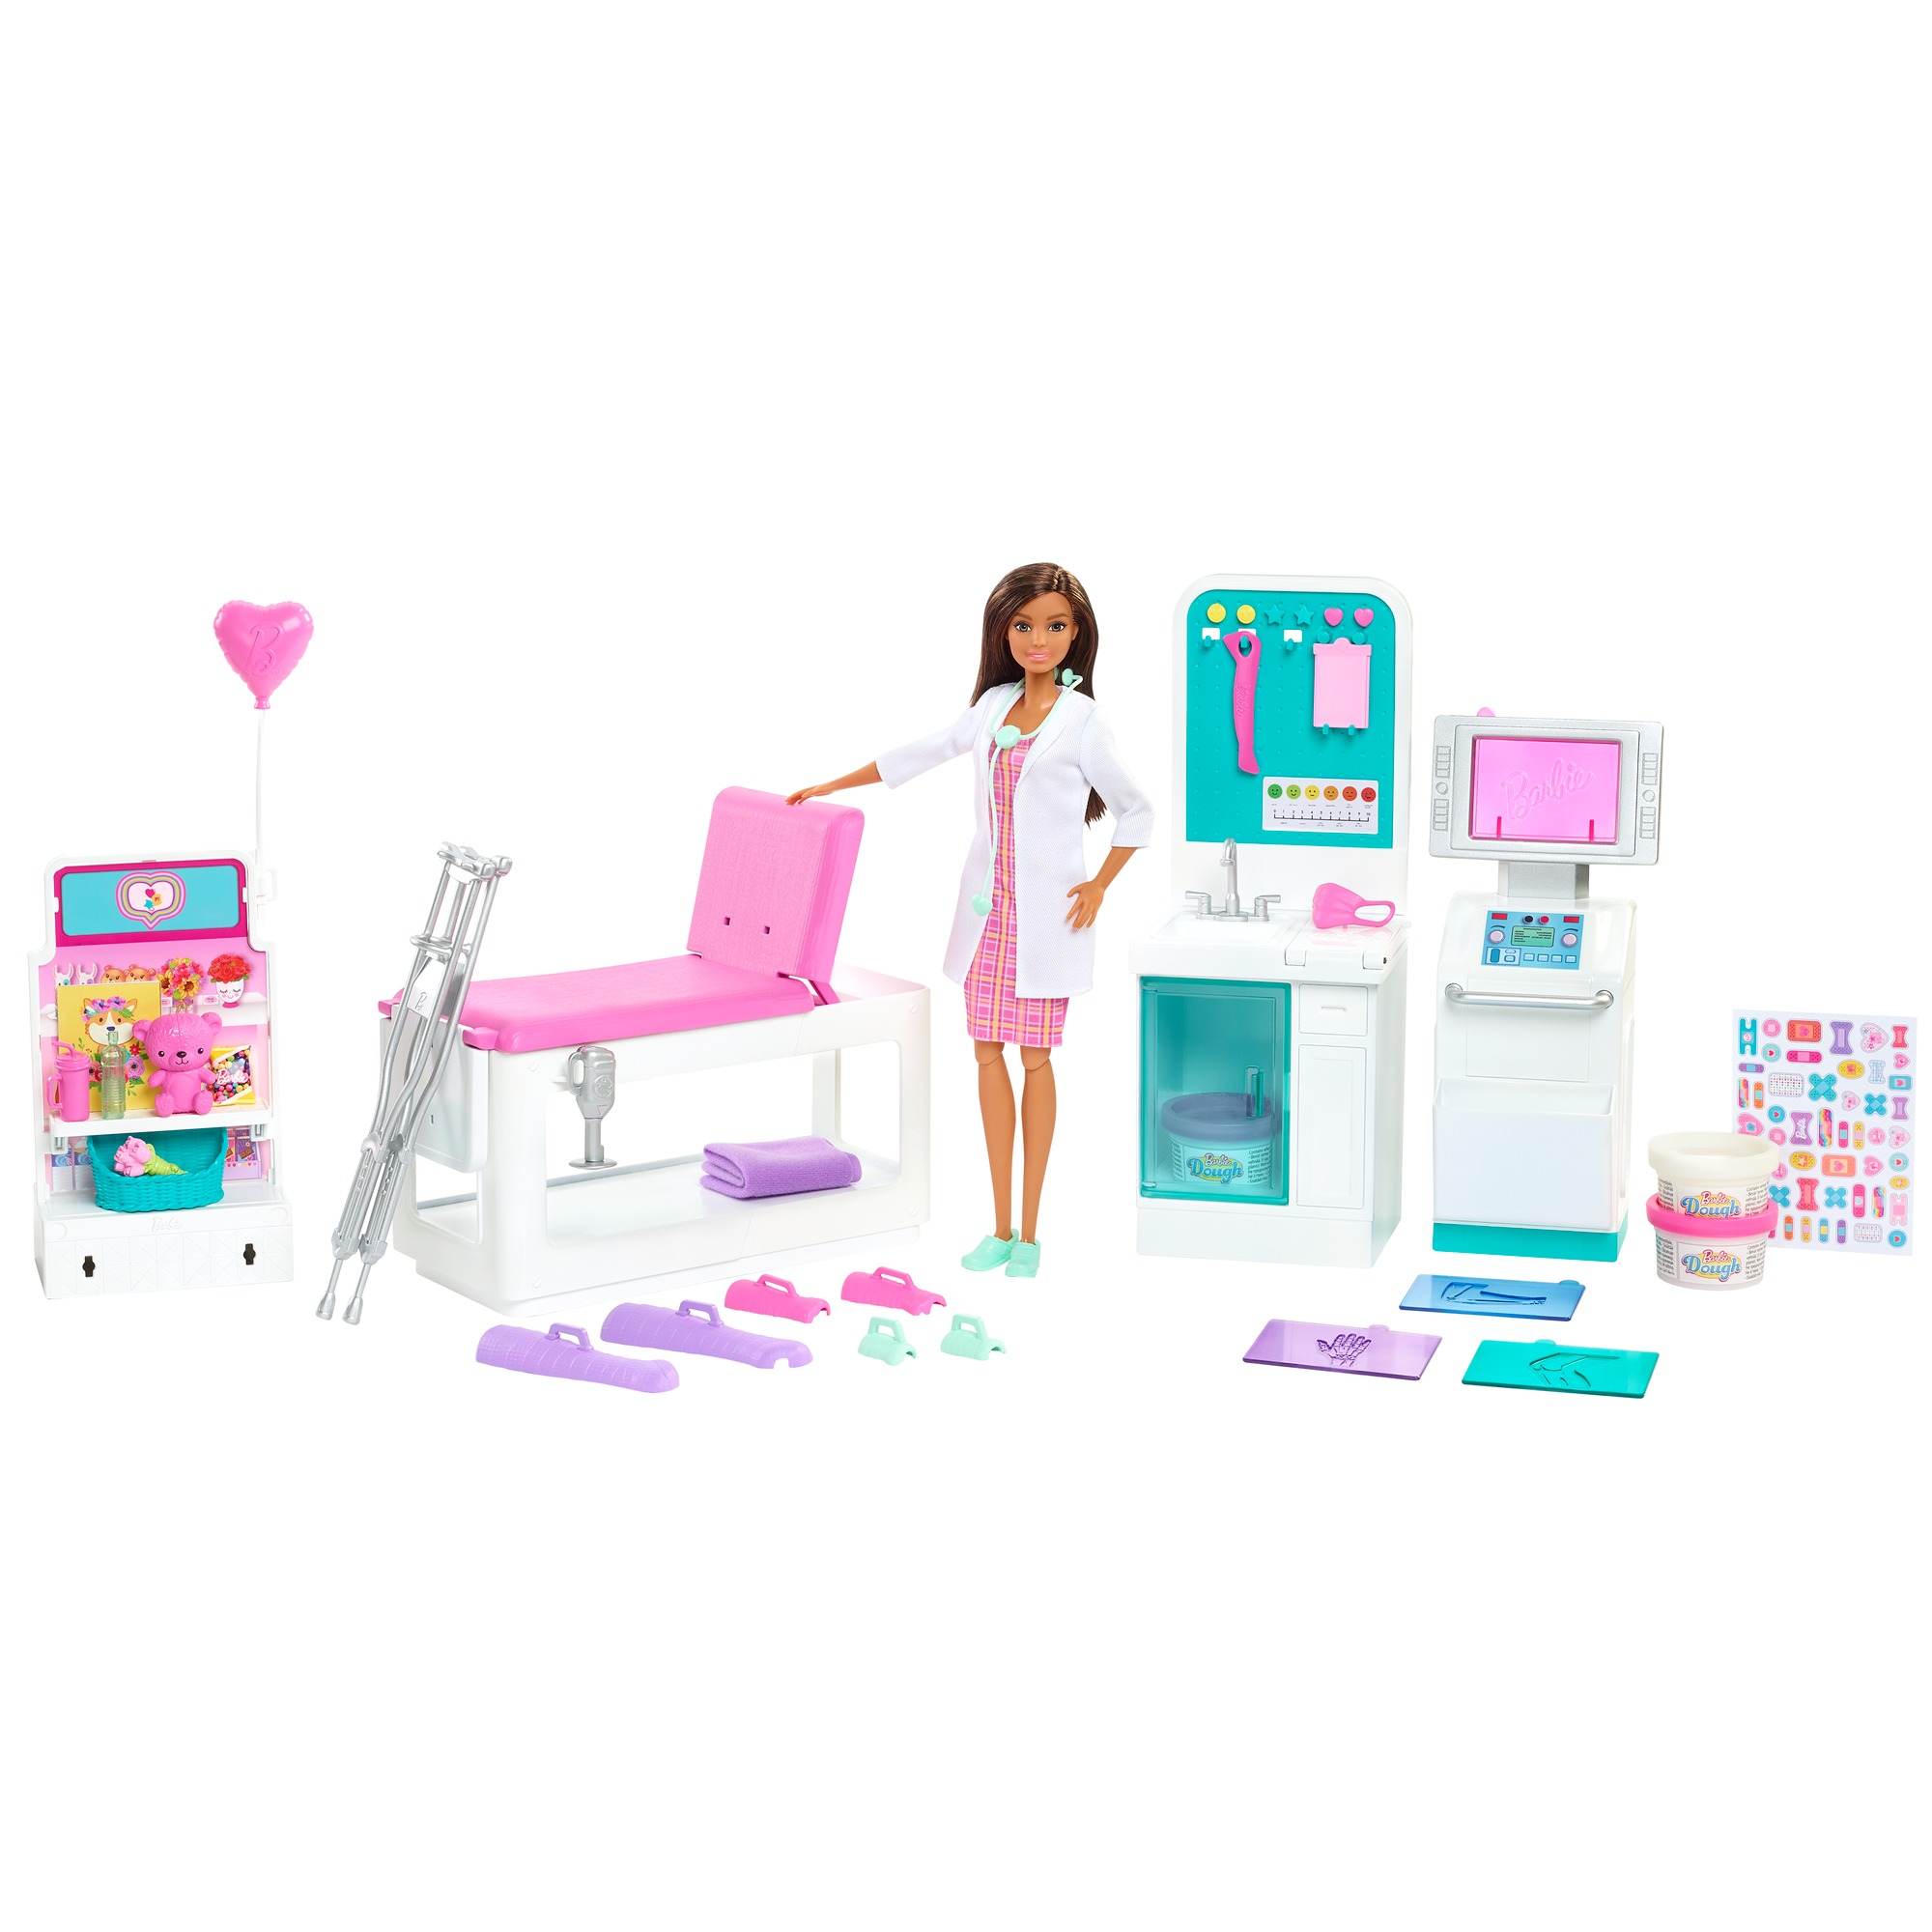 Barbie - dottoressa clinica di pronto soccorso, con capelli scuri, 4 aree da gioco ed oltre 30 pezzi inclusi, per bambini 3+ anni - Barbie